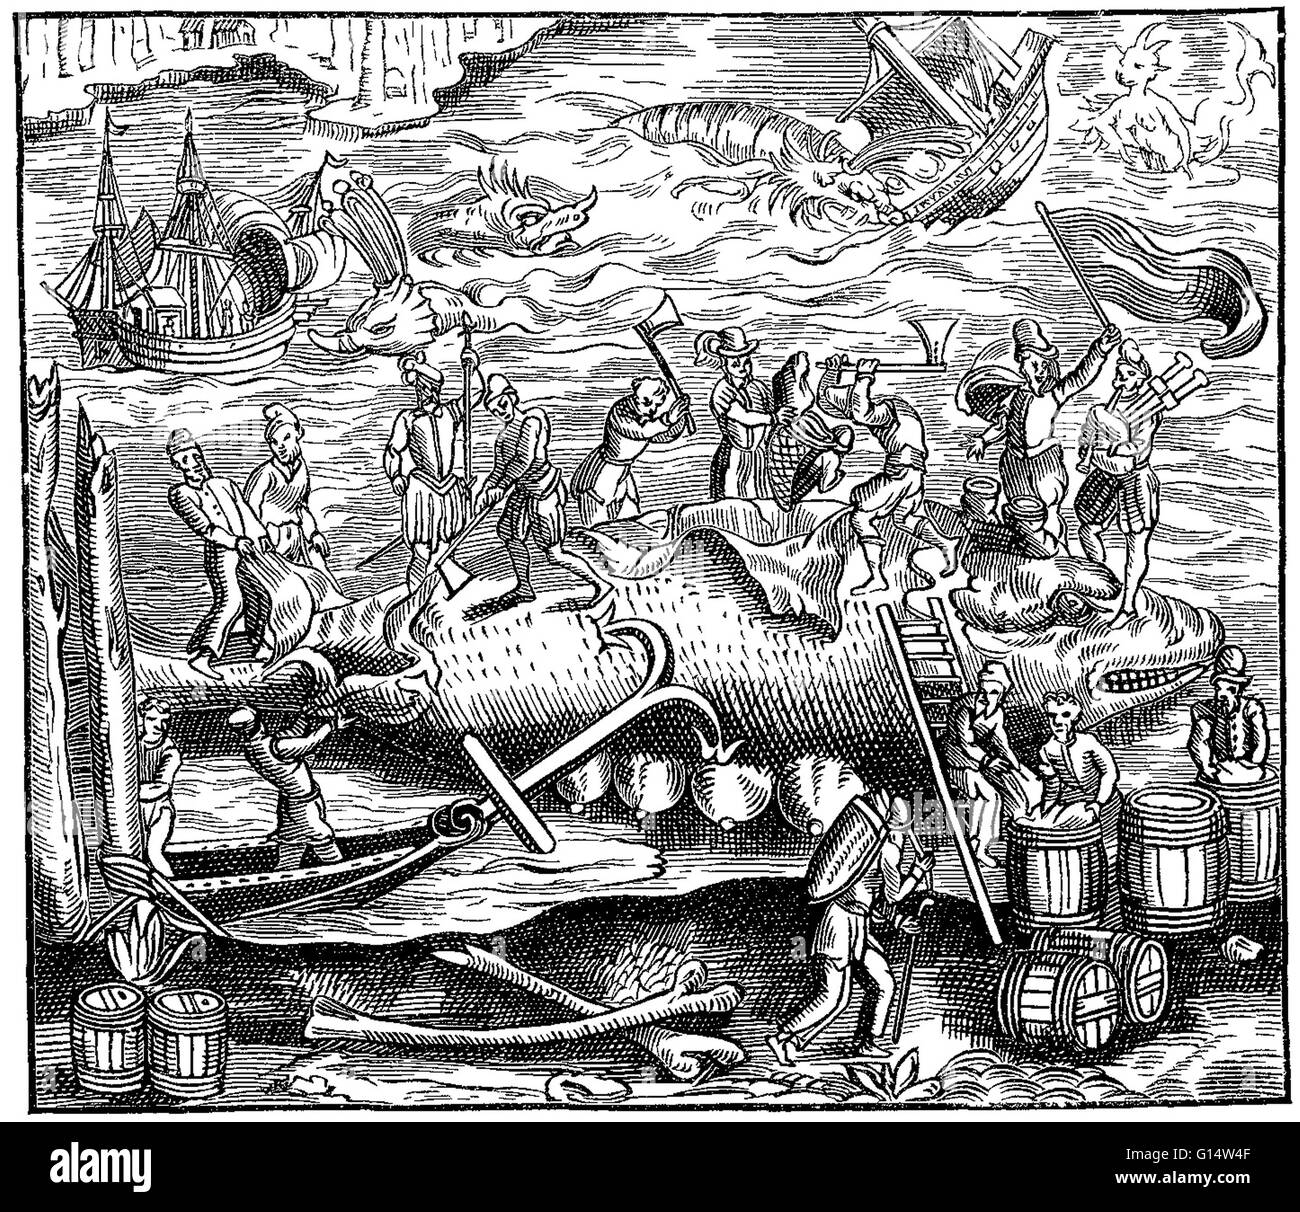 Xilografia di un "whale-catture" da des Monstres et prodiges da Ambroise Paré, 1573. Des Monstres viene riempito con gli account non comprovate di diavoli di mare, marine scrofe e animali mostruosi di volti umani. Con la sua ampia discussione di riproduzione e ill Foto Stock